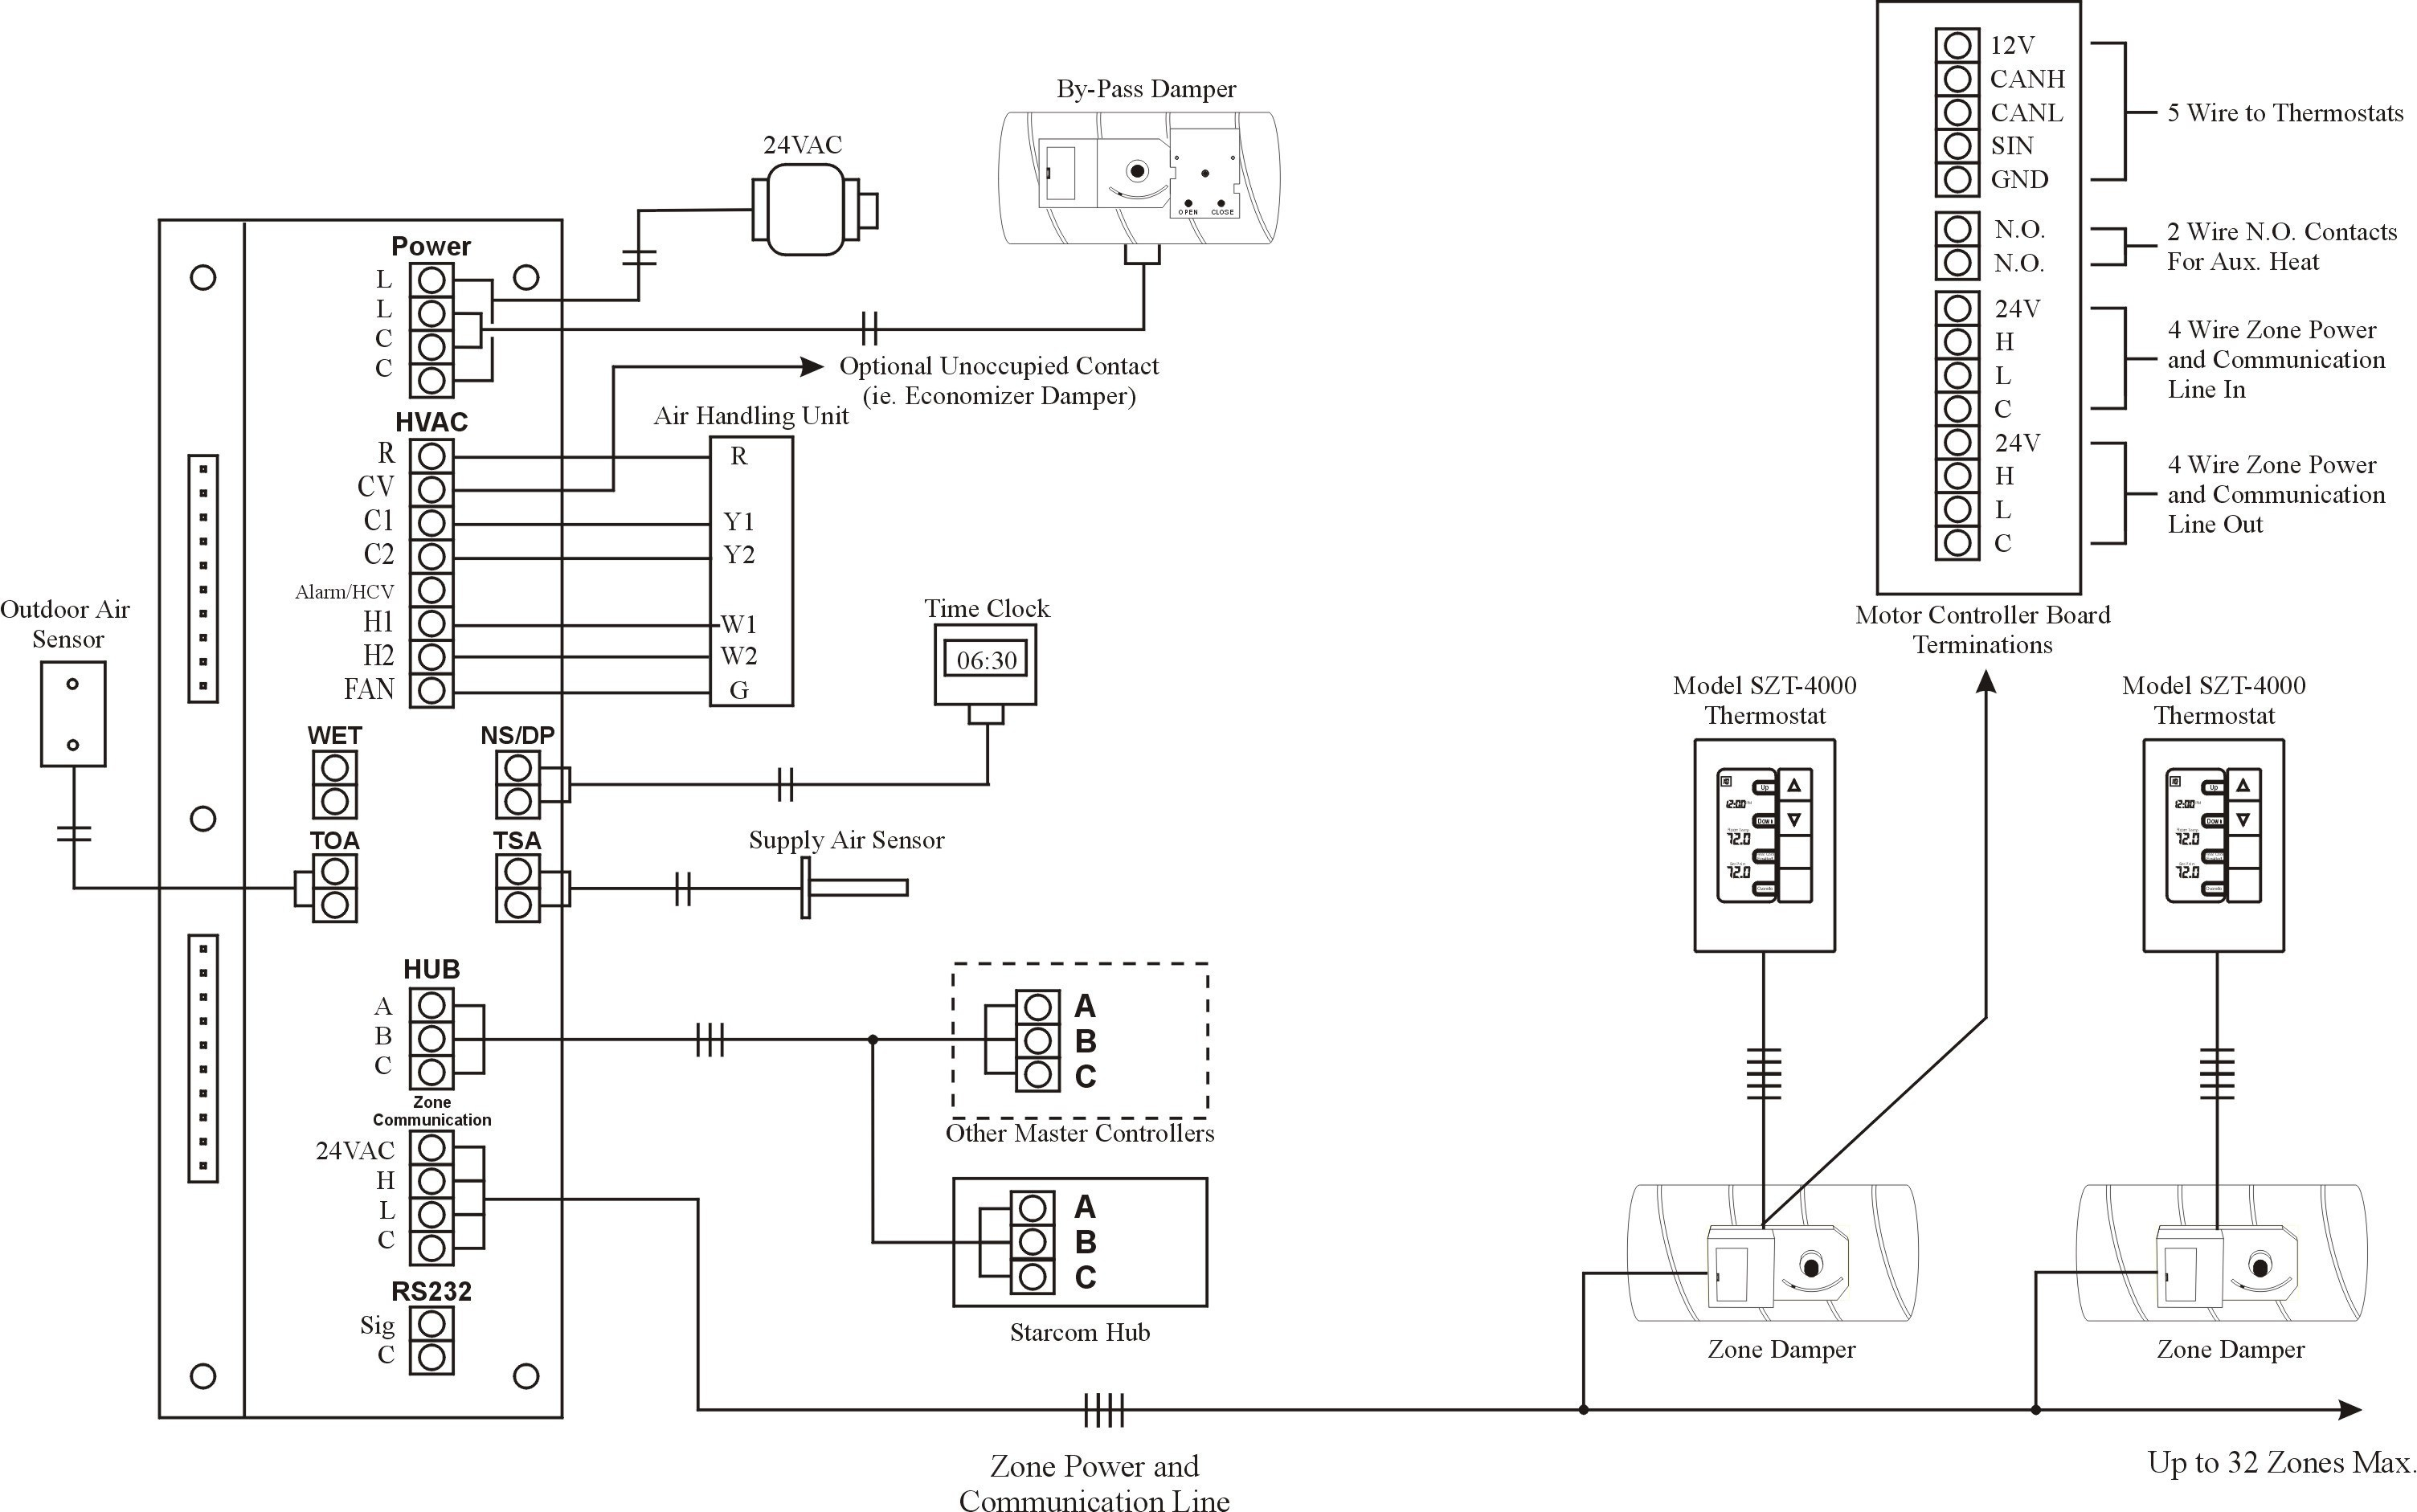 Fire Alarm Horn Strobe Wiring Diagram | Wiring Diagram - Fire Alarm Horn Strobe Wiring Diagram